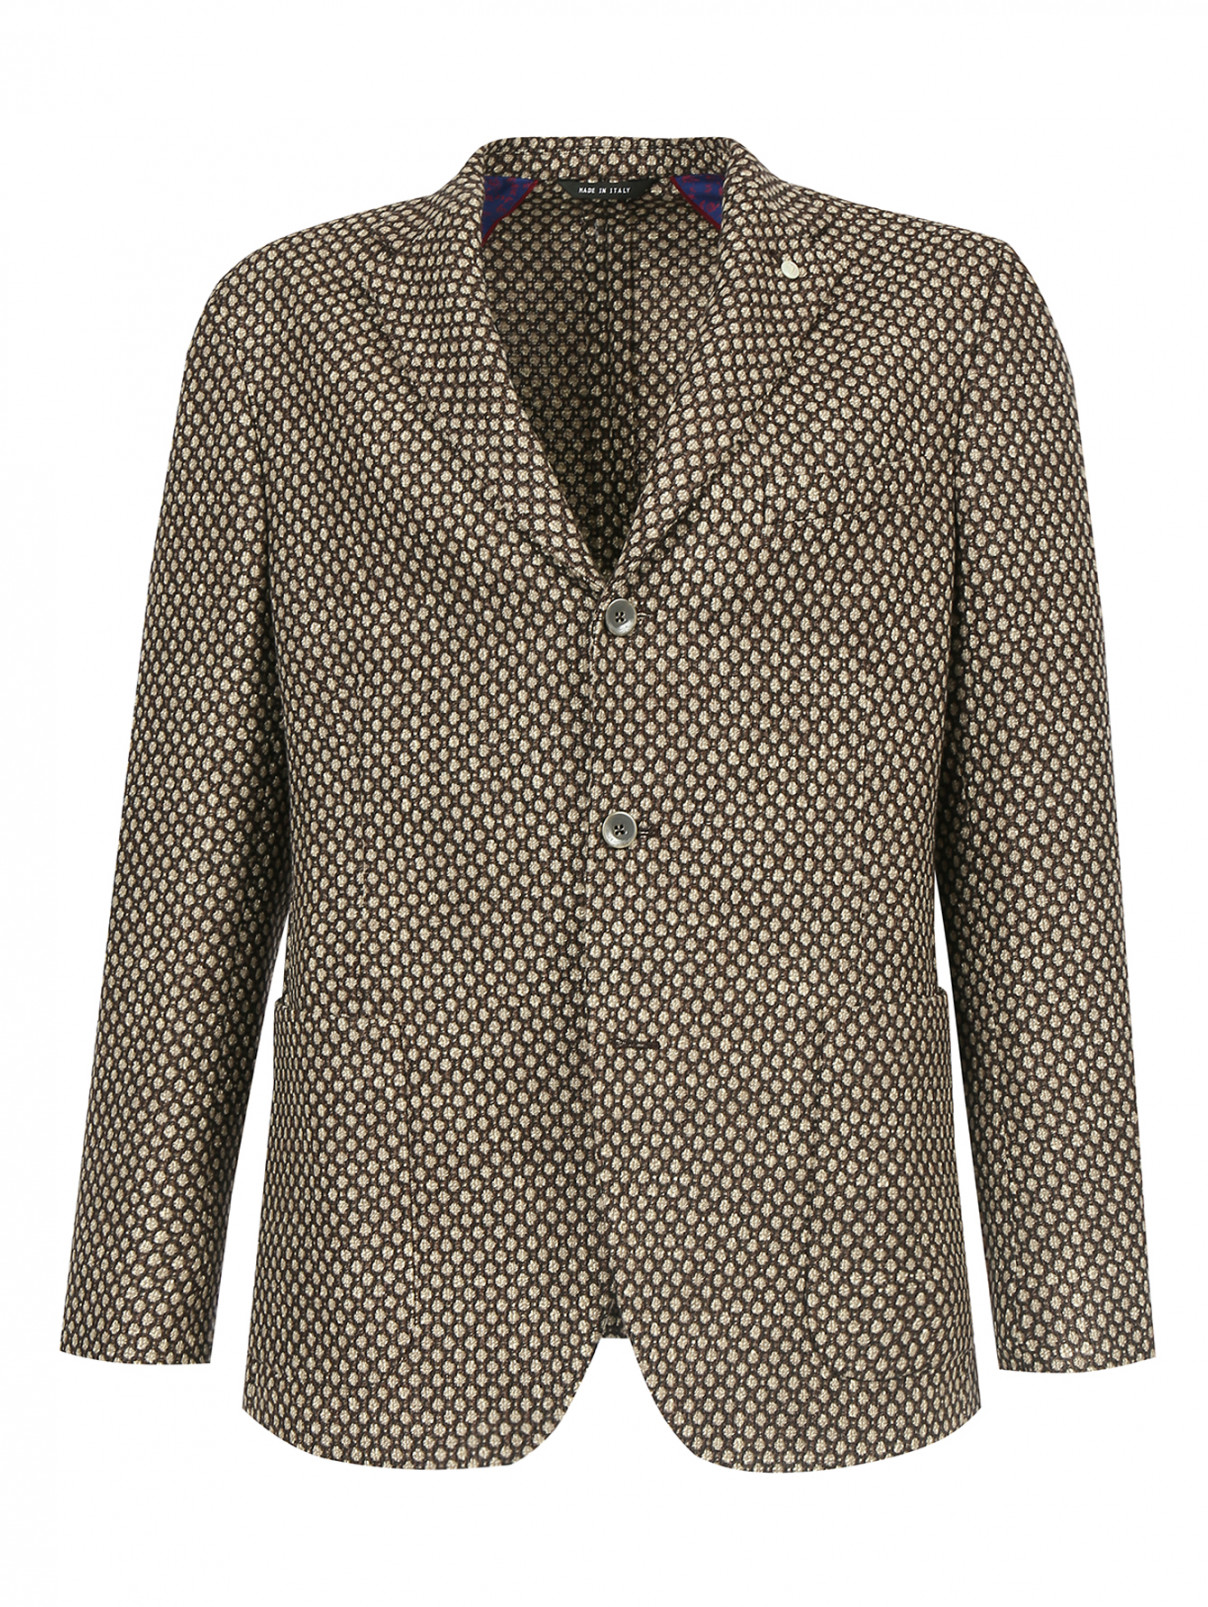 Пиджак из шерсти и шелка Andrea Neri  –  Общий вид  – Цвет:  Бежевый